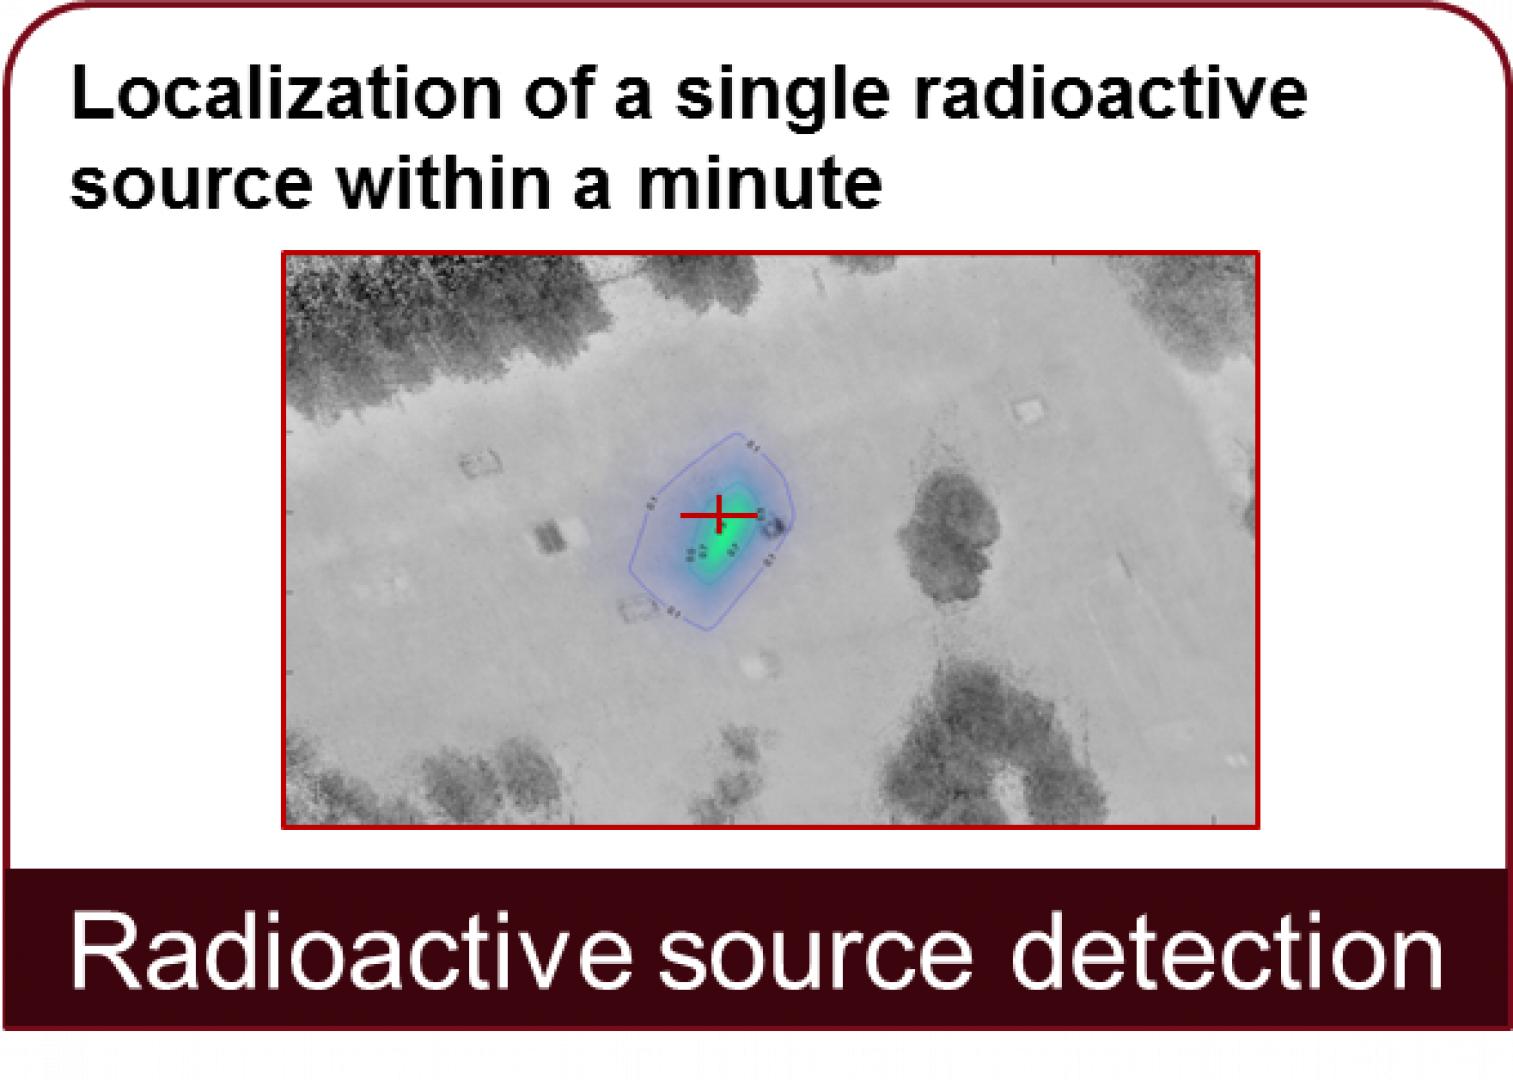 Wykrywanie źródeł radioaktywnych: Zlokalizowanie pojedynczego źródła radioaktywnego w ciągu minuty